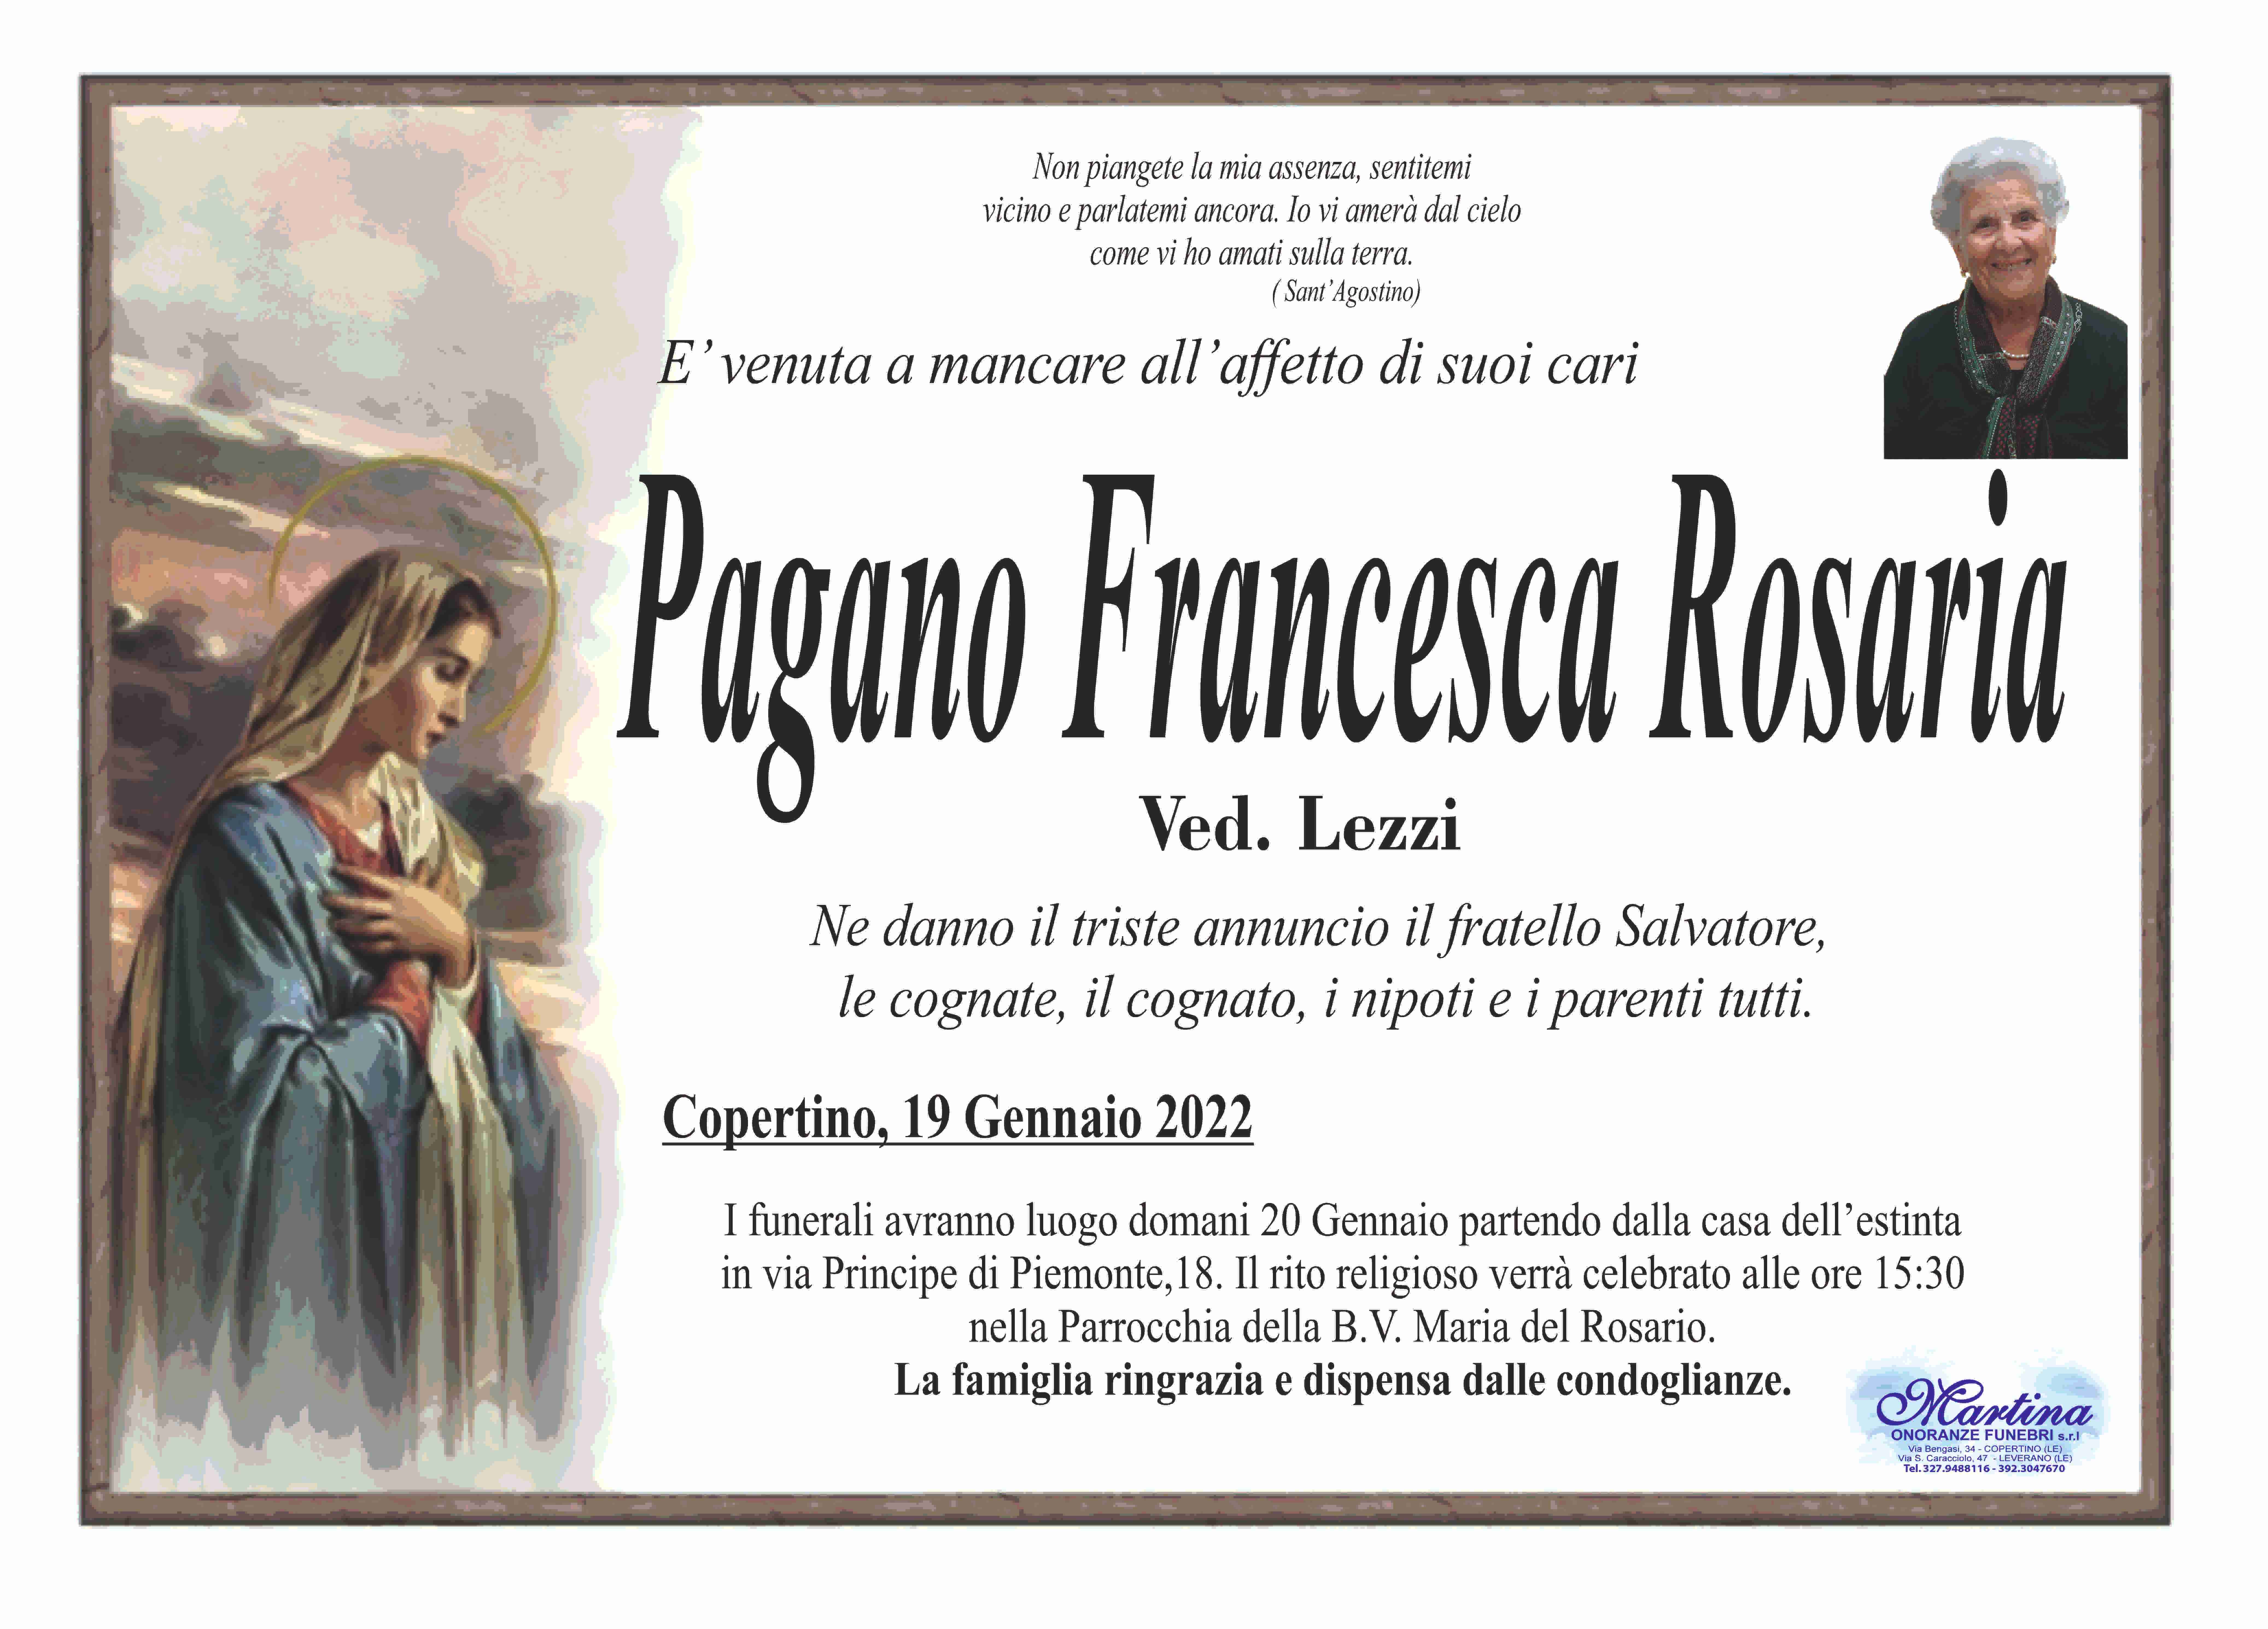 Francesca Rosaria Pagano